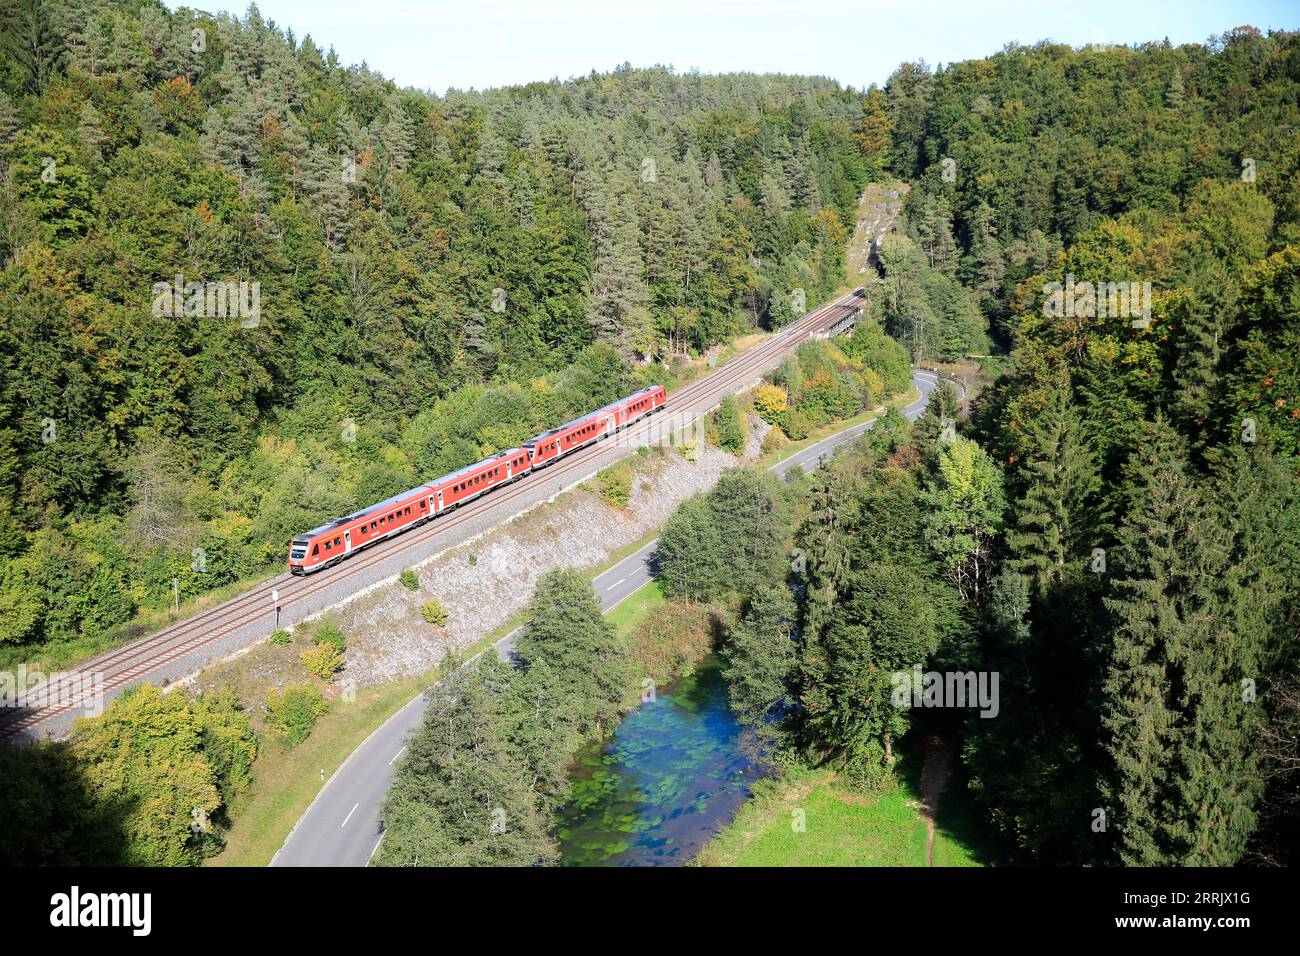 Die DB Regio Railway, die Strecken von Nürnberg nach Hof, Furth im Wald, Marktredwitz und Schwandorf waren die ersten Strecken, die Anfang der 1990er Jahre für den Einsatz von Pendolino-Zügen in Bayern ausgebaut wurden Stockfoto